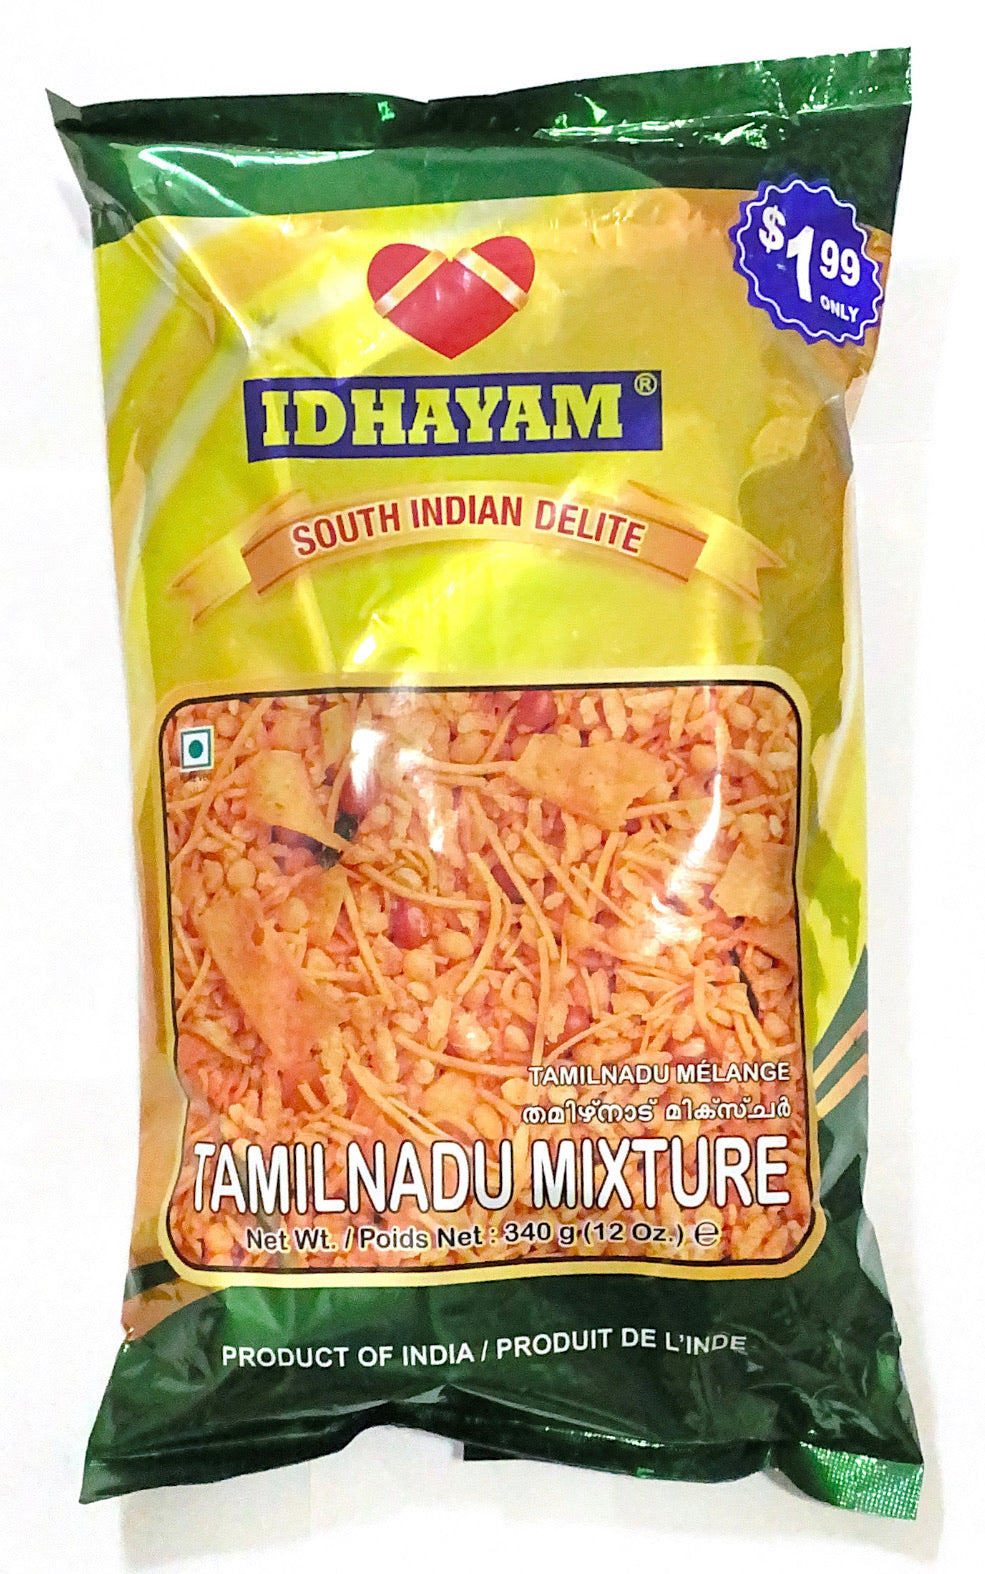 Tamil Nadu Mixture